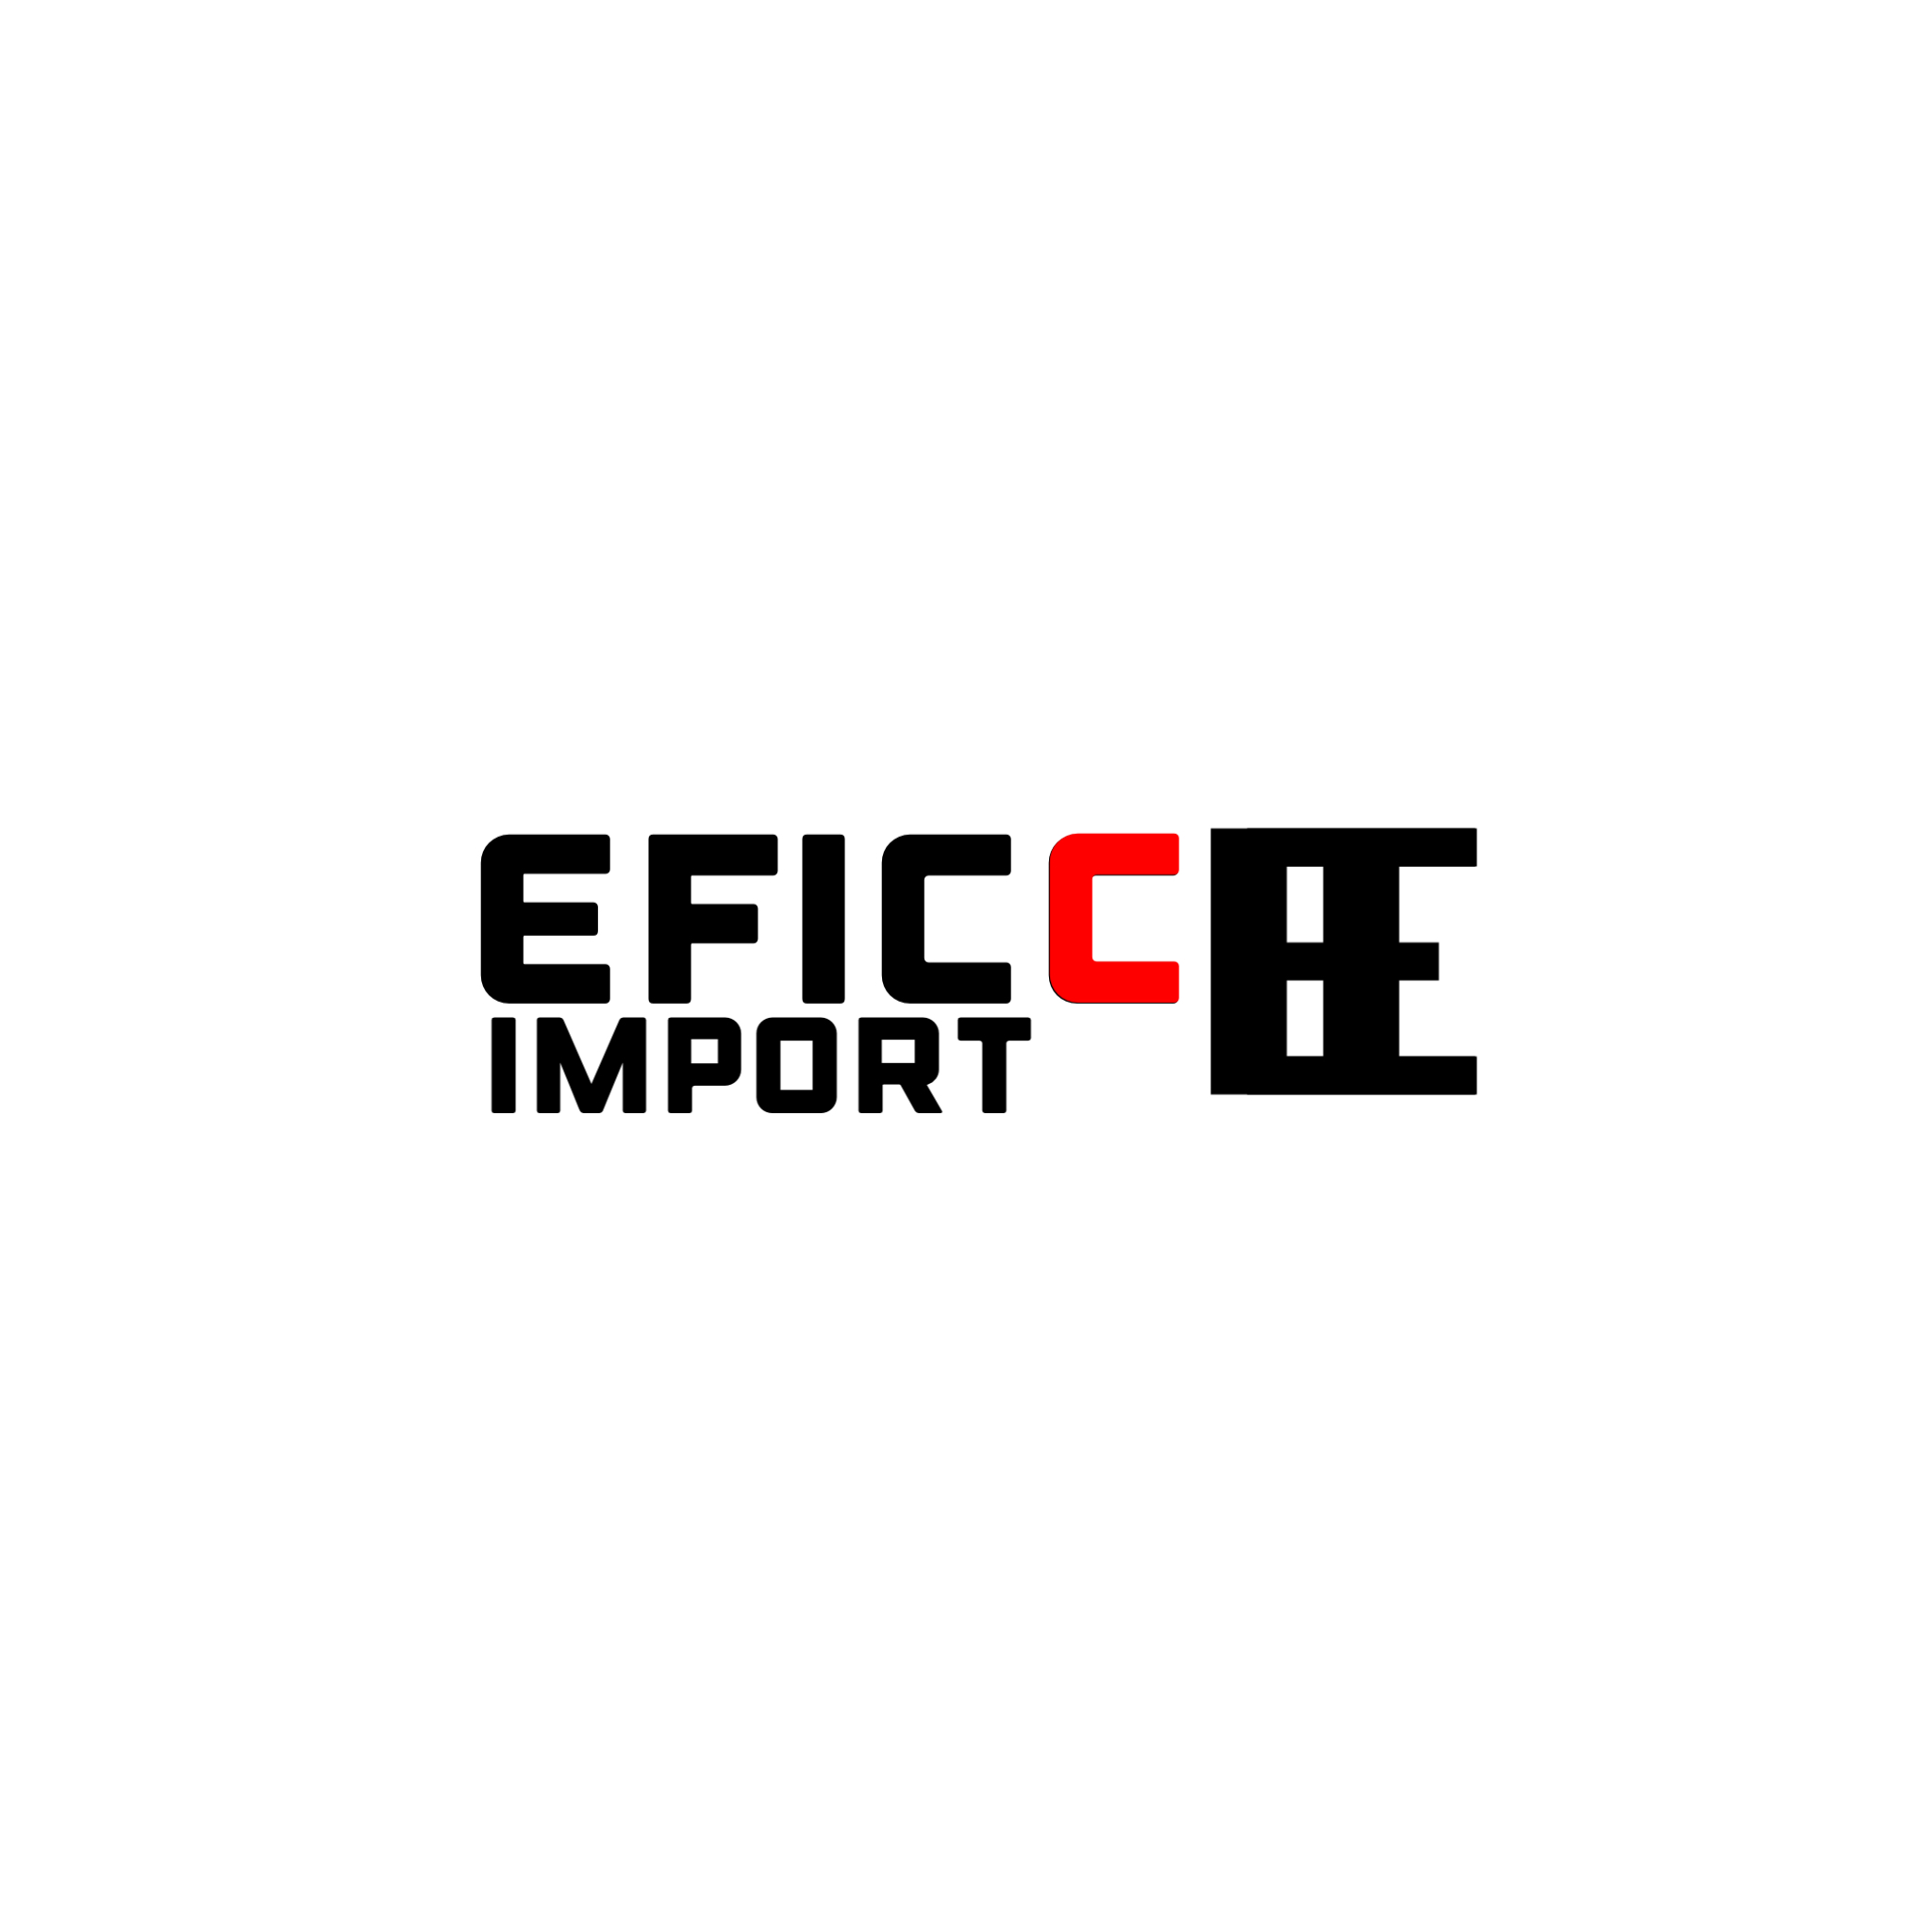 EFICC IMPORT